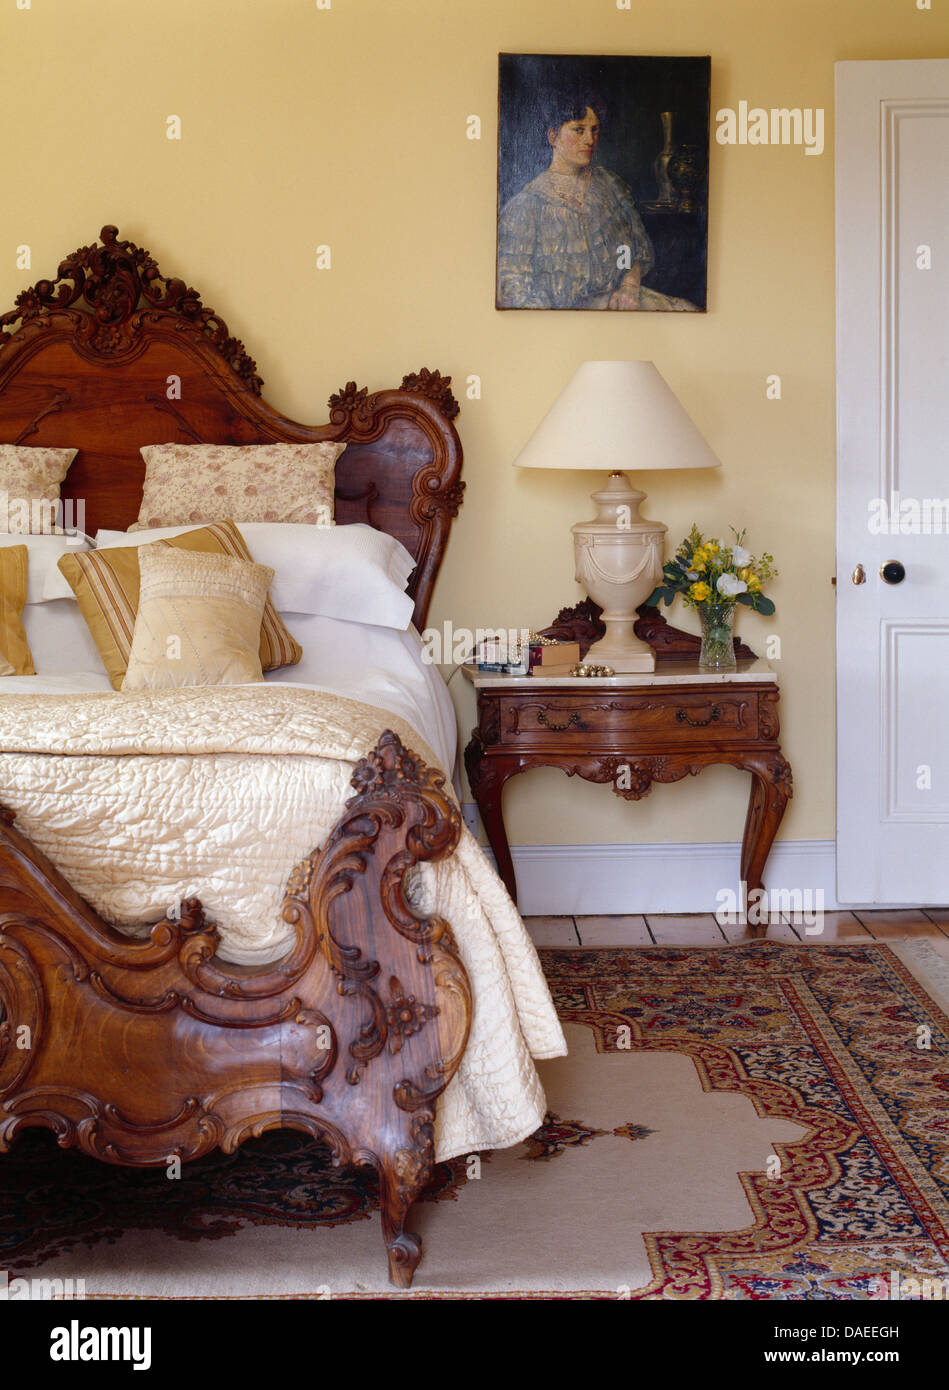 Letto antico con crema seta piumone e cuscini in paese tradizionale camera da letto con ritratto sulla parete sopra il comodino Foto Stock